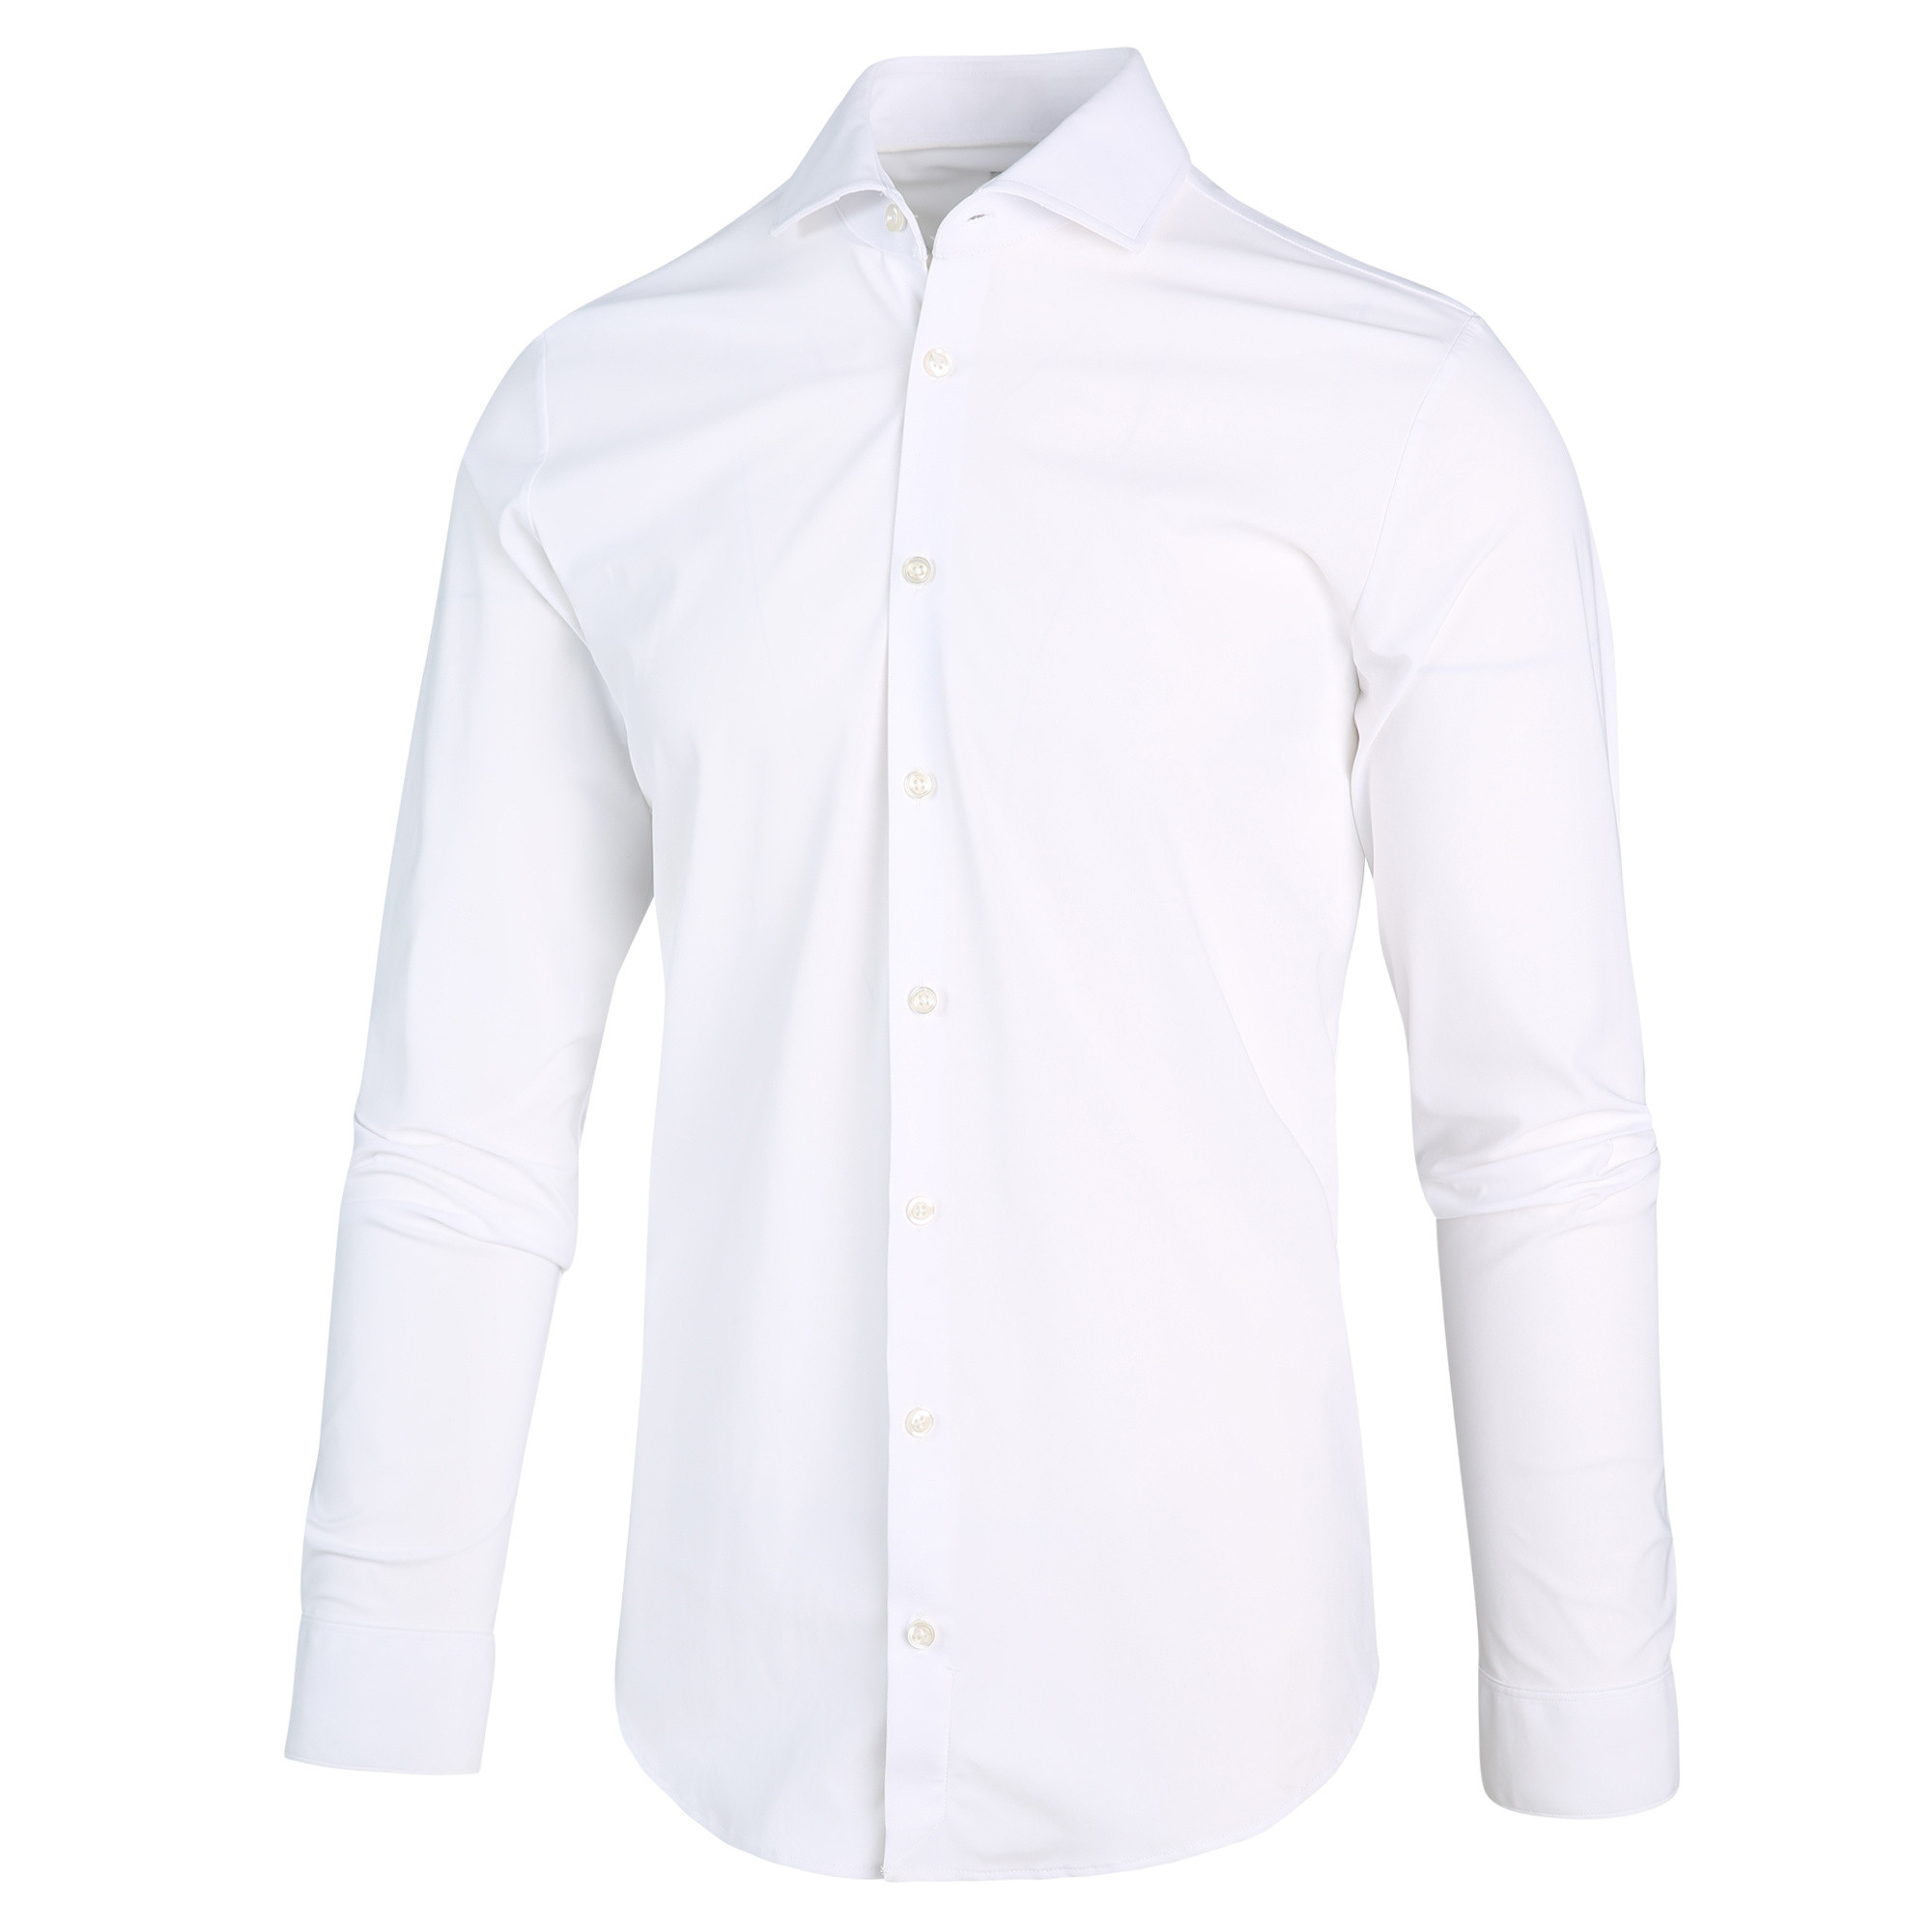 Afbeelding van Blue Industry 2191.22 shirt white